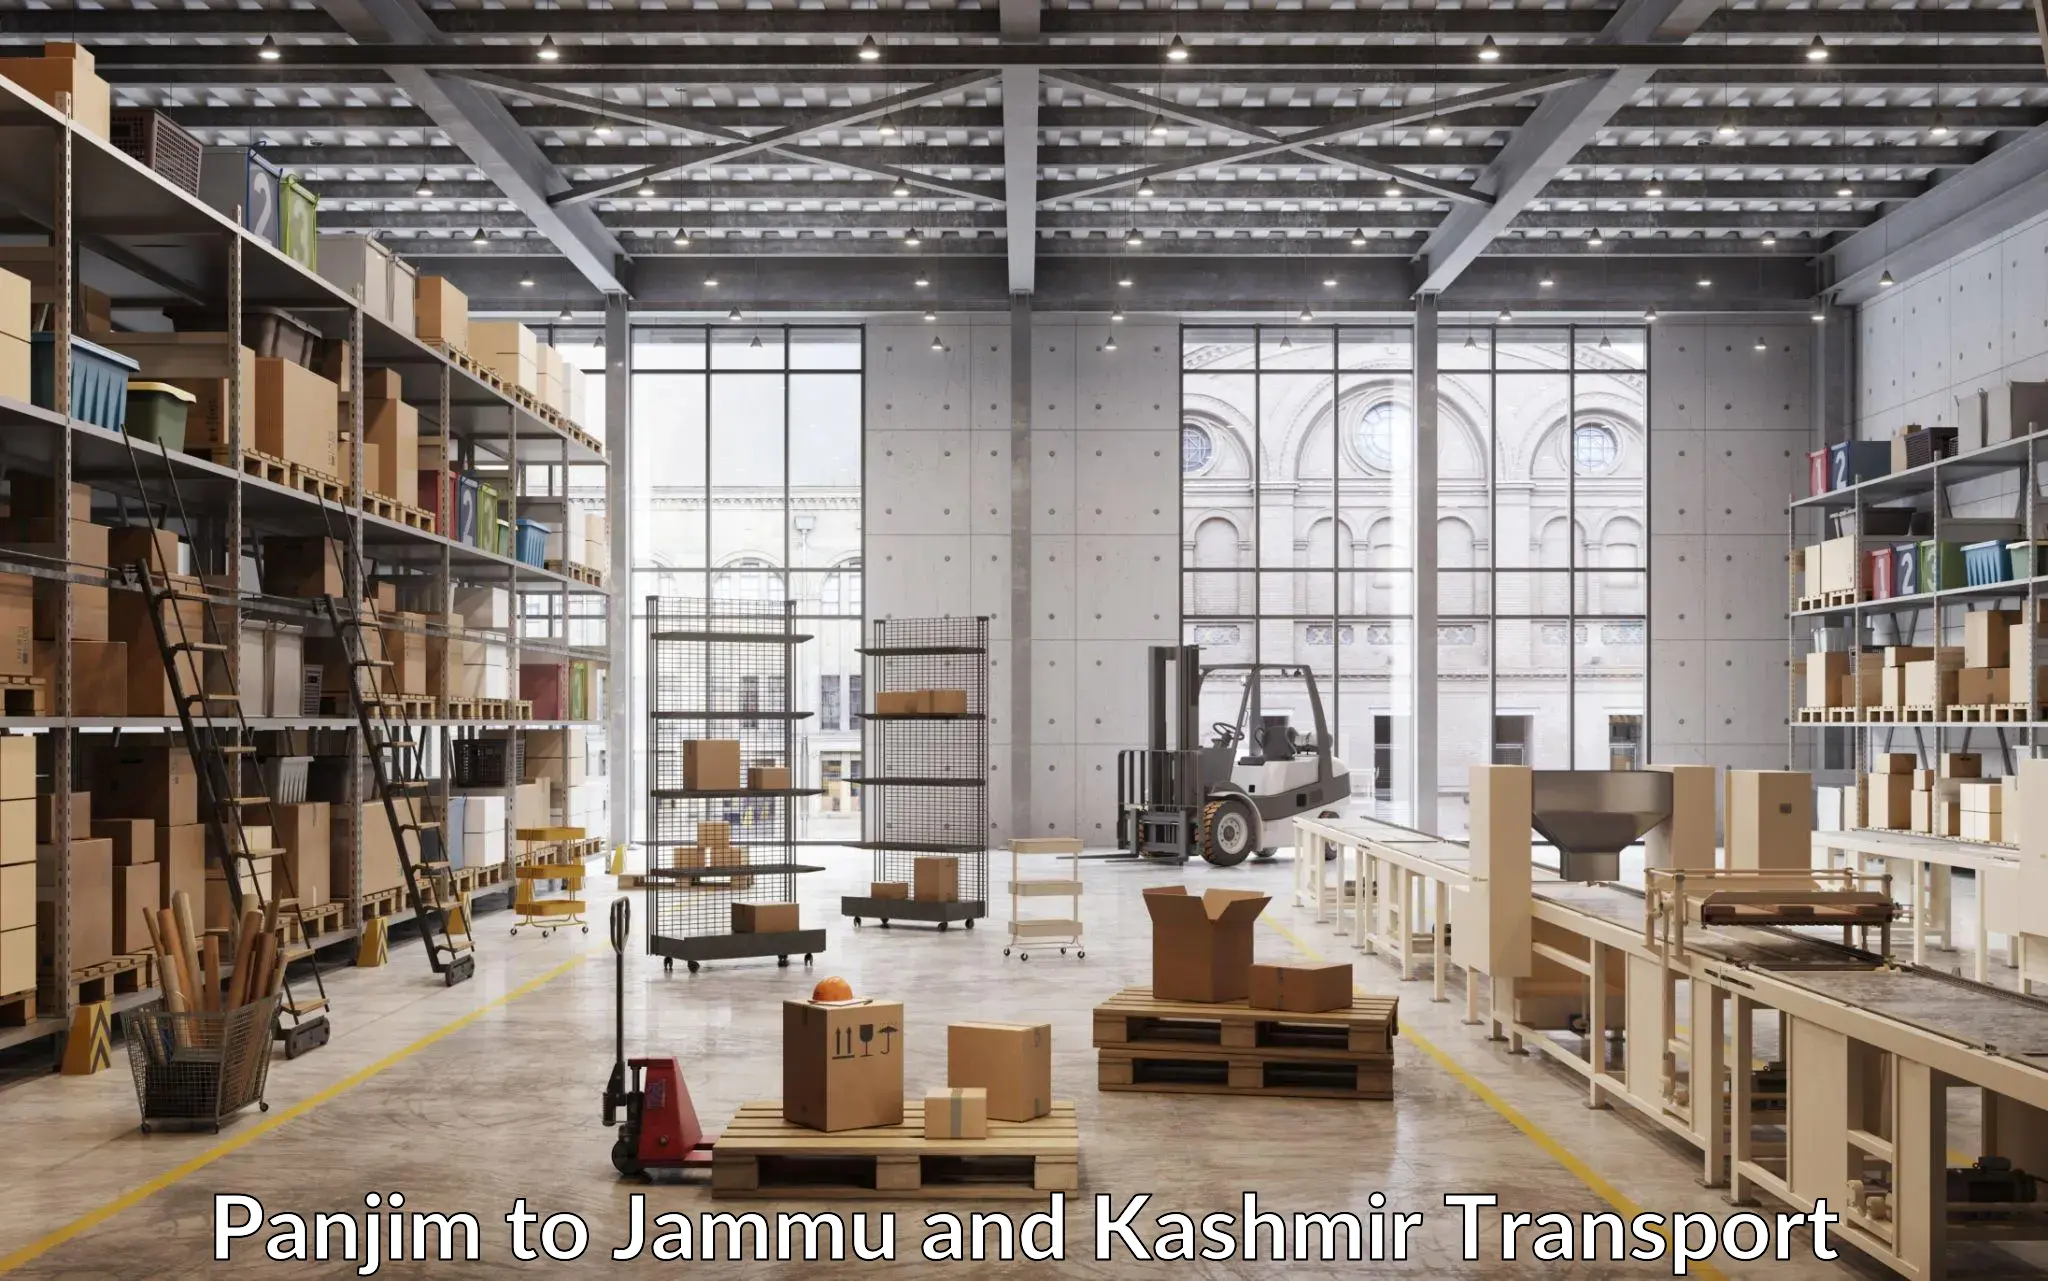 Lorry transport service Panjim to Jammu and Kashmir